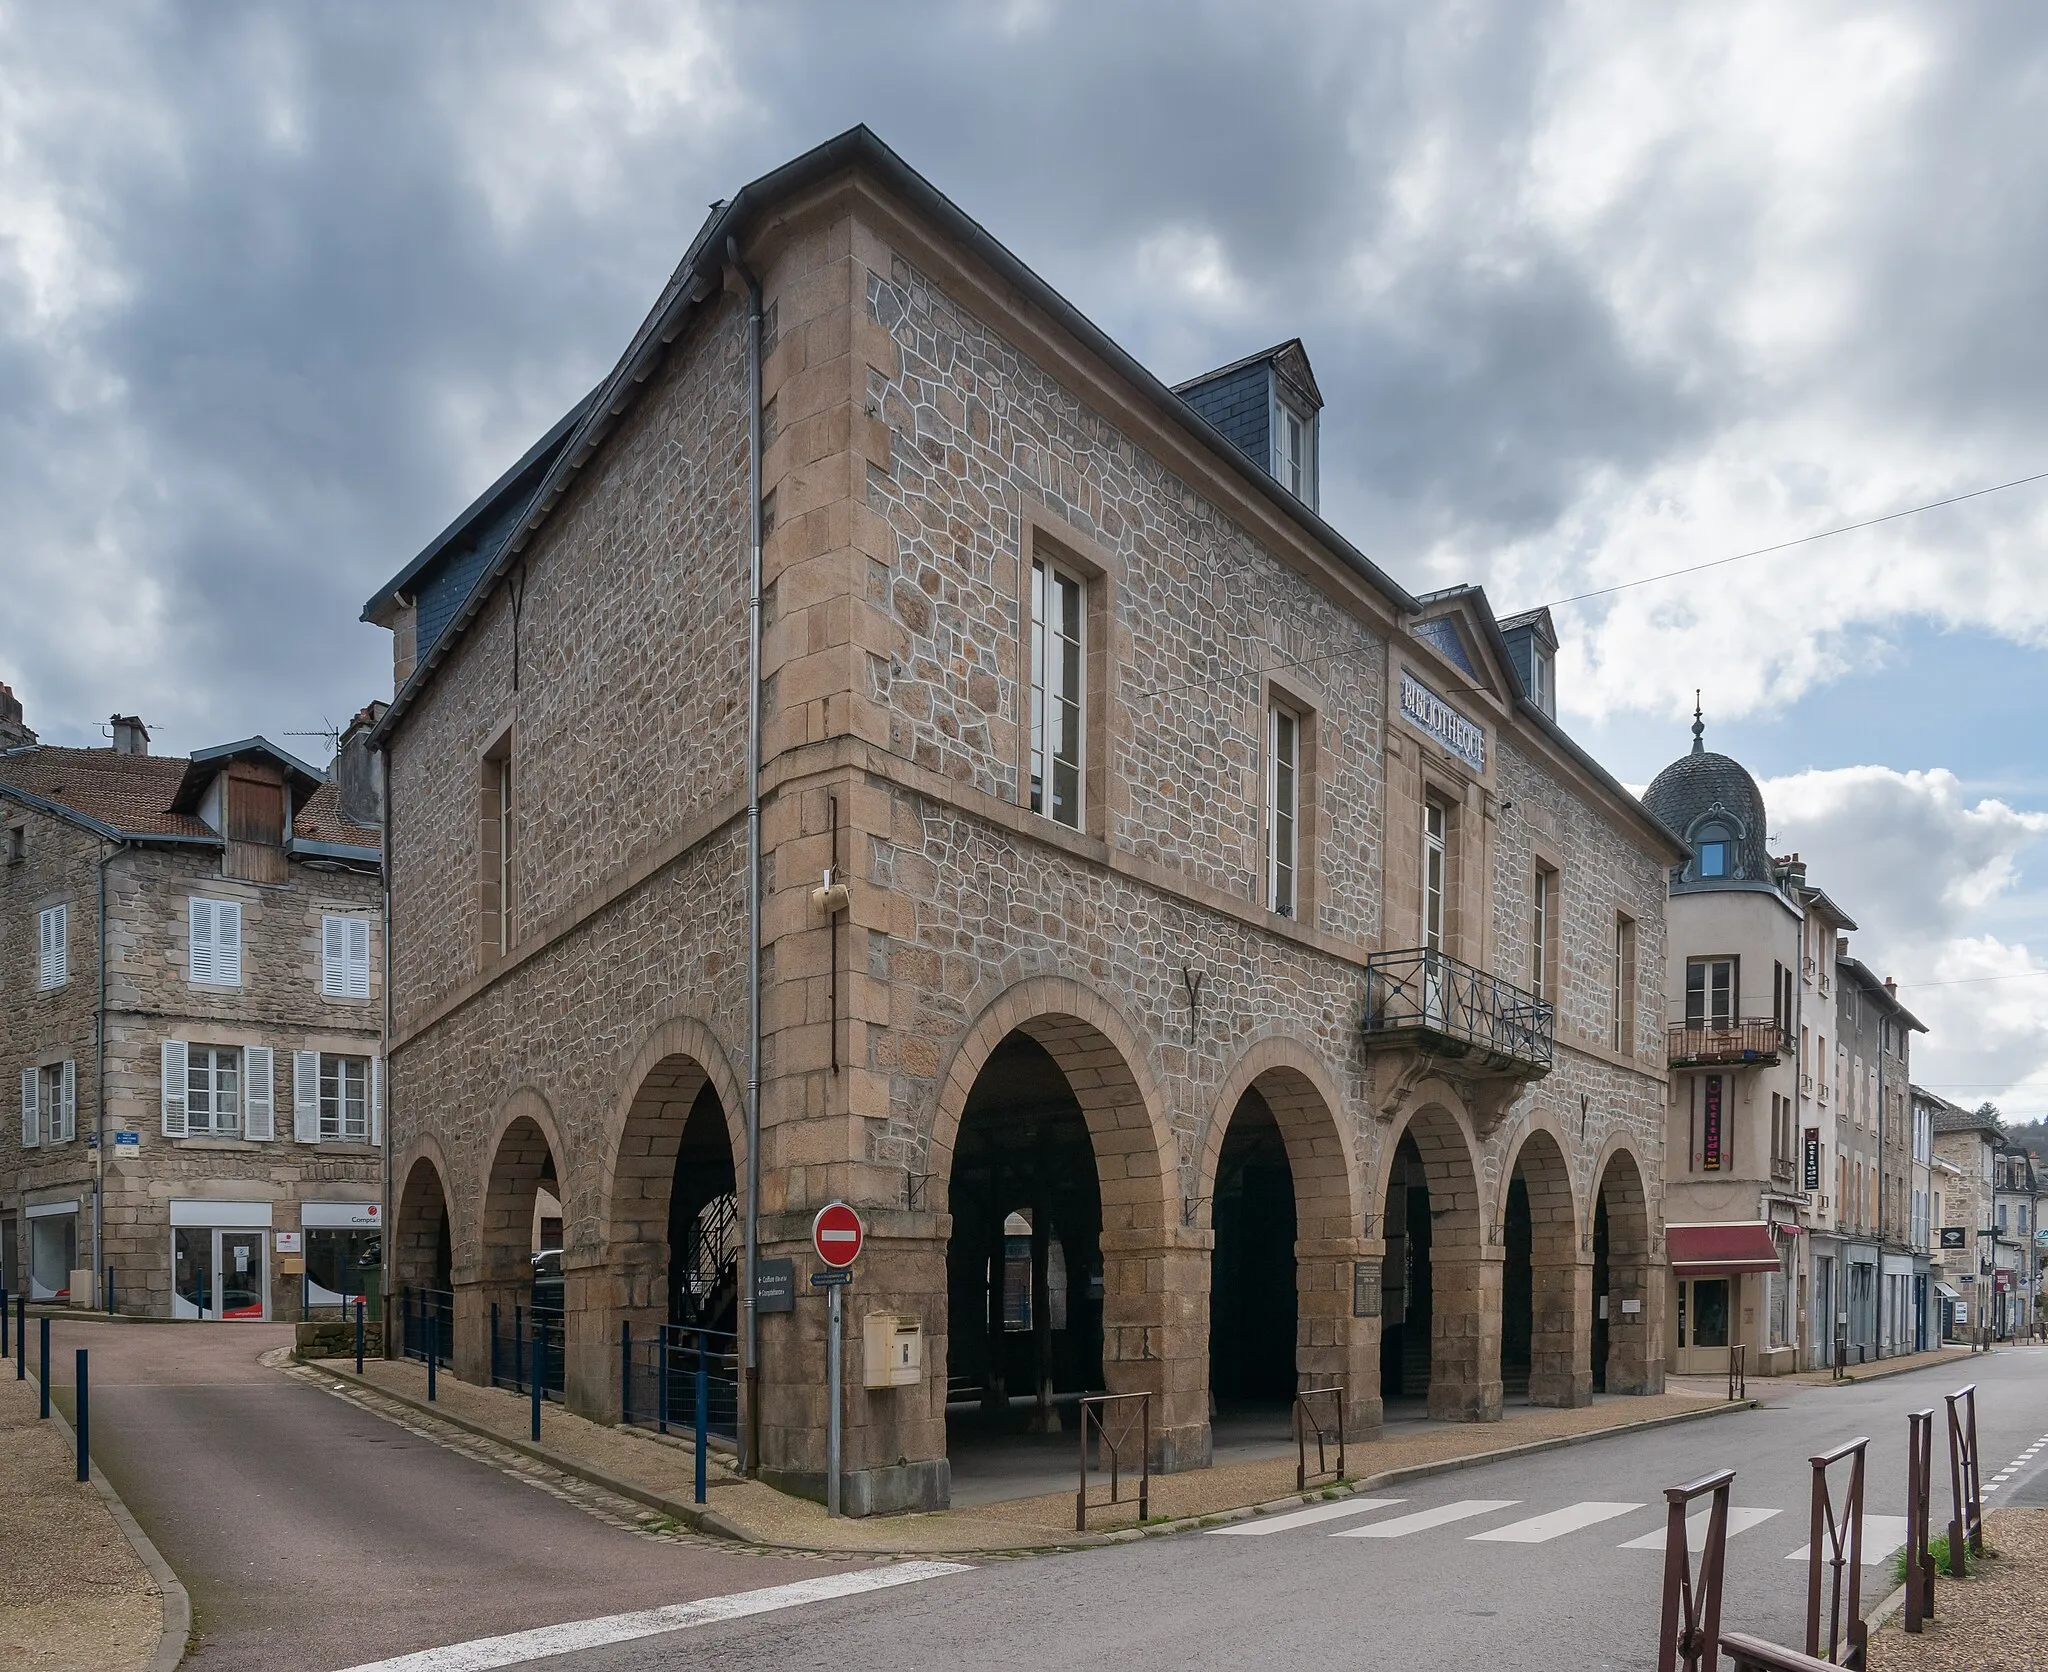 Kuva kohteesta Limousin